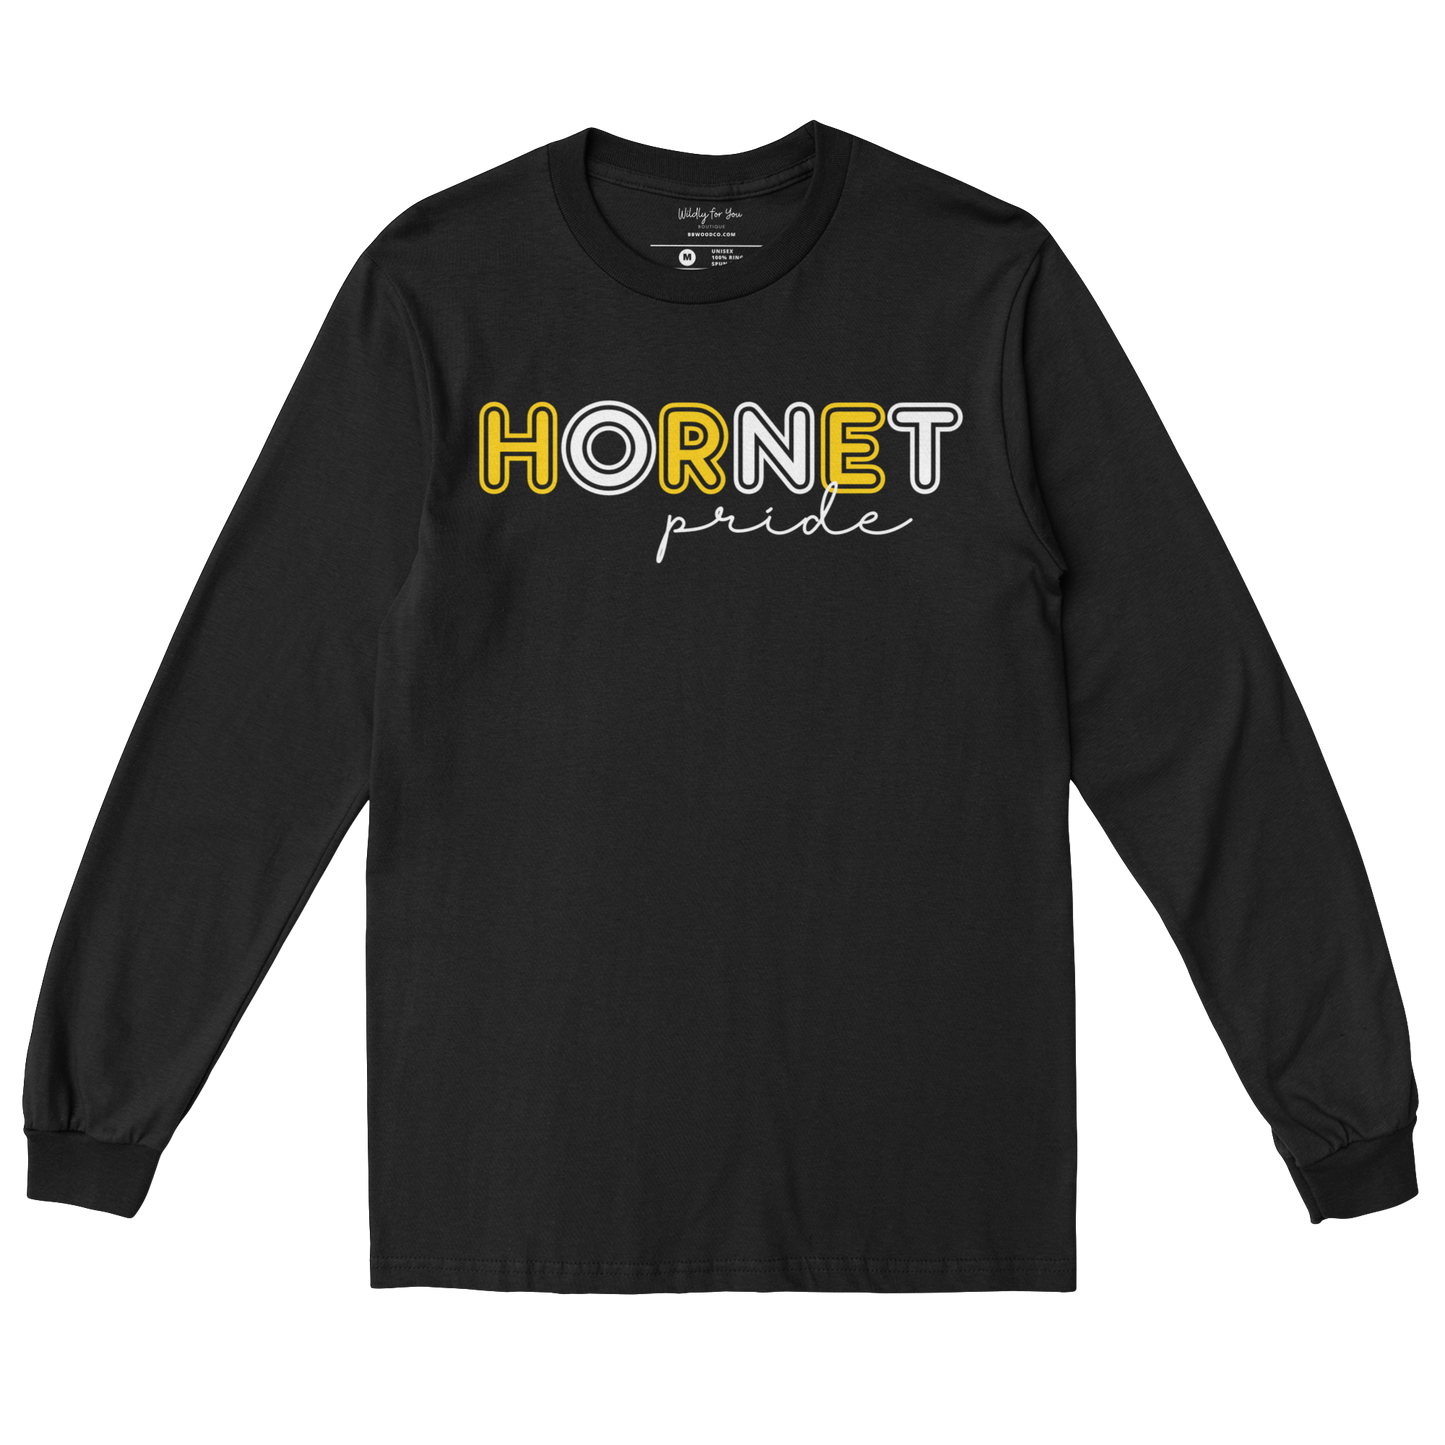 Hornet Pride Long Sleeve Tee